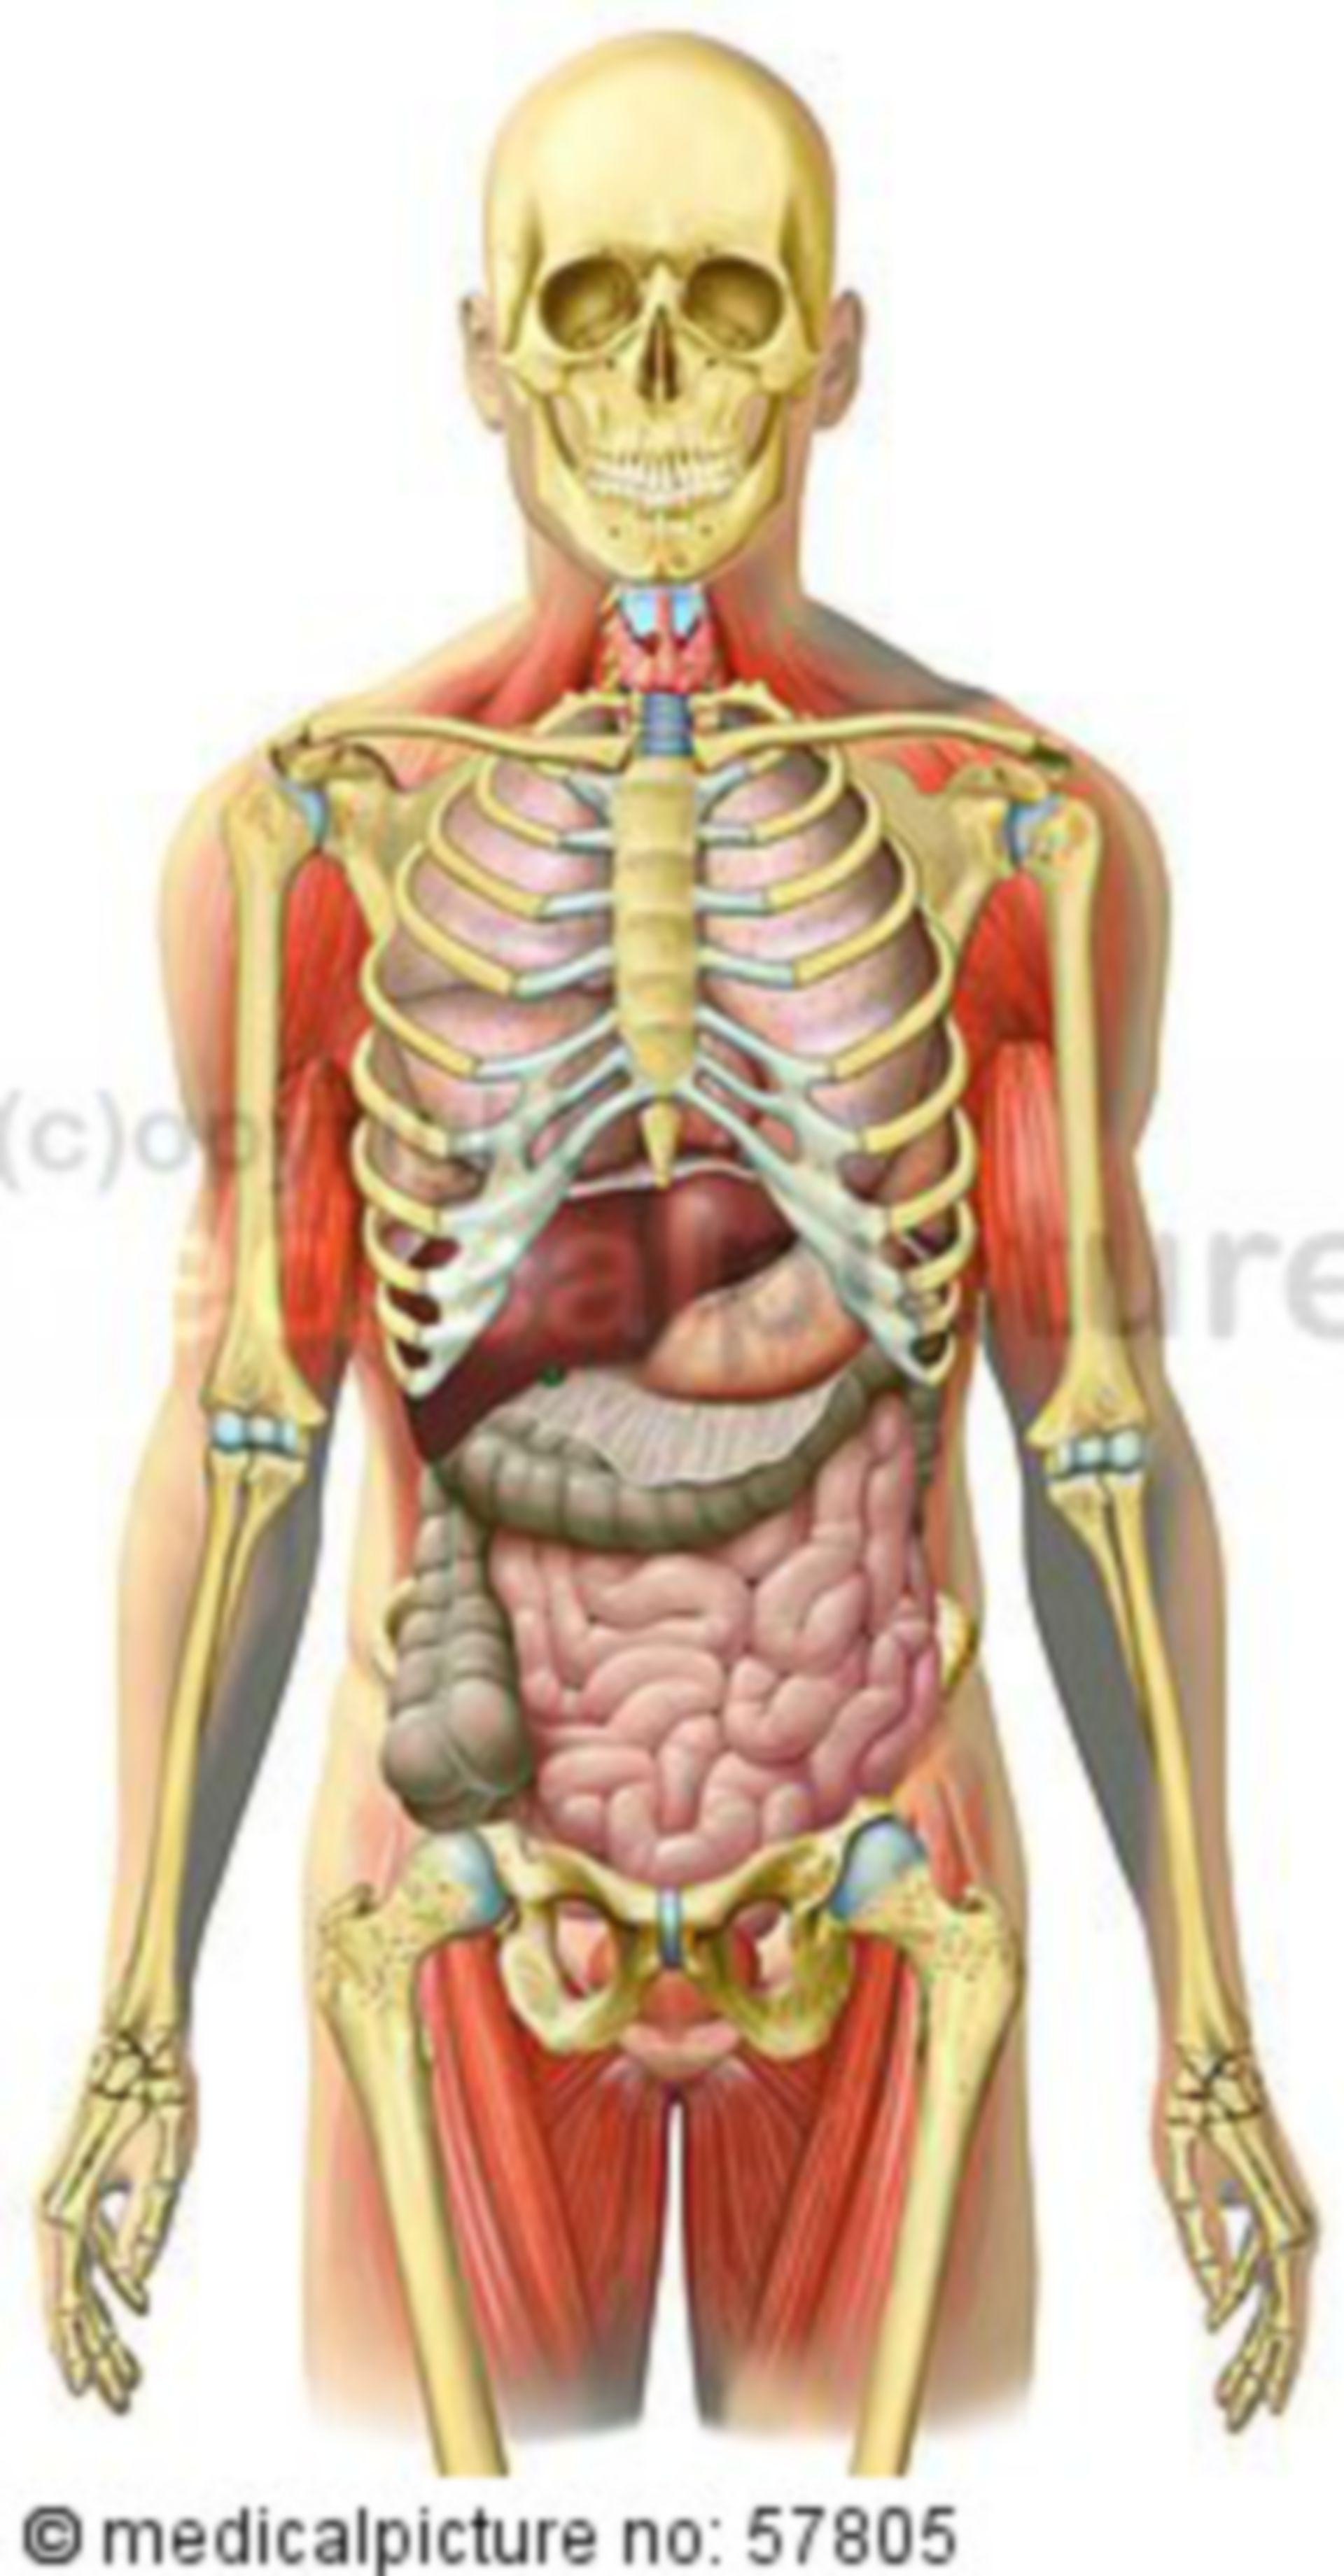  Anatomische Illustrationen - Skelett mit Brust-, Bauch-, Beckeneingeweide und Skelettmuskulatur 
